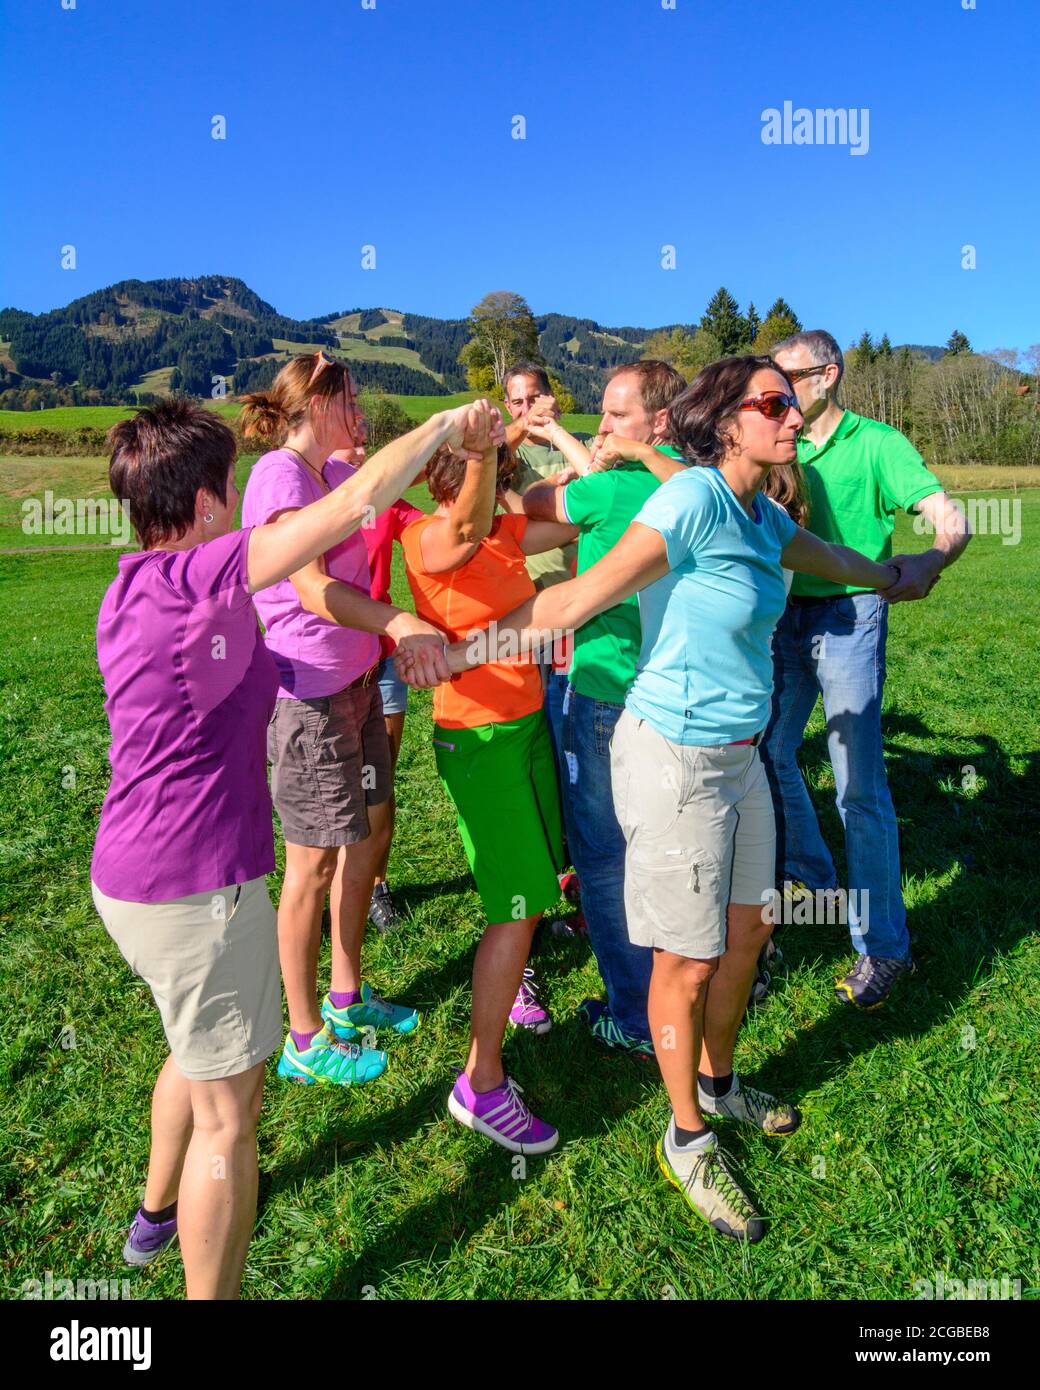 Eine Gruppe bei einer Teambuilding-Übung - das Zusammenspiel im Team bringt letztlich den Erfolg, auch und vor allem beim Lösen schwieriger Aufgaben - Stock Photo